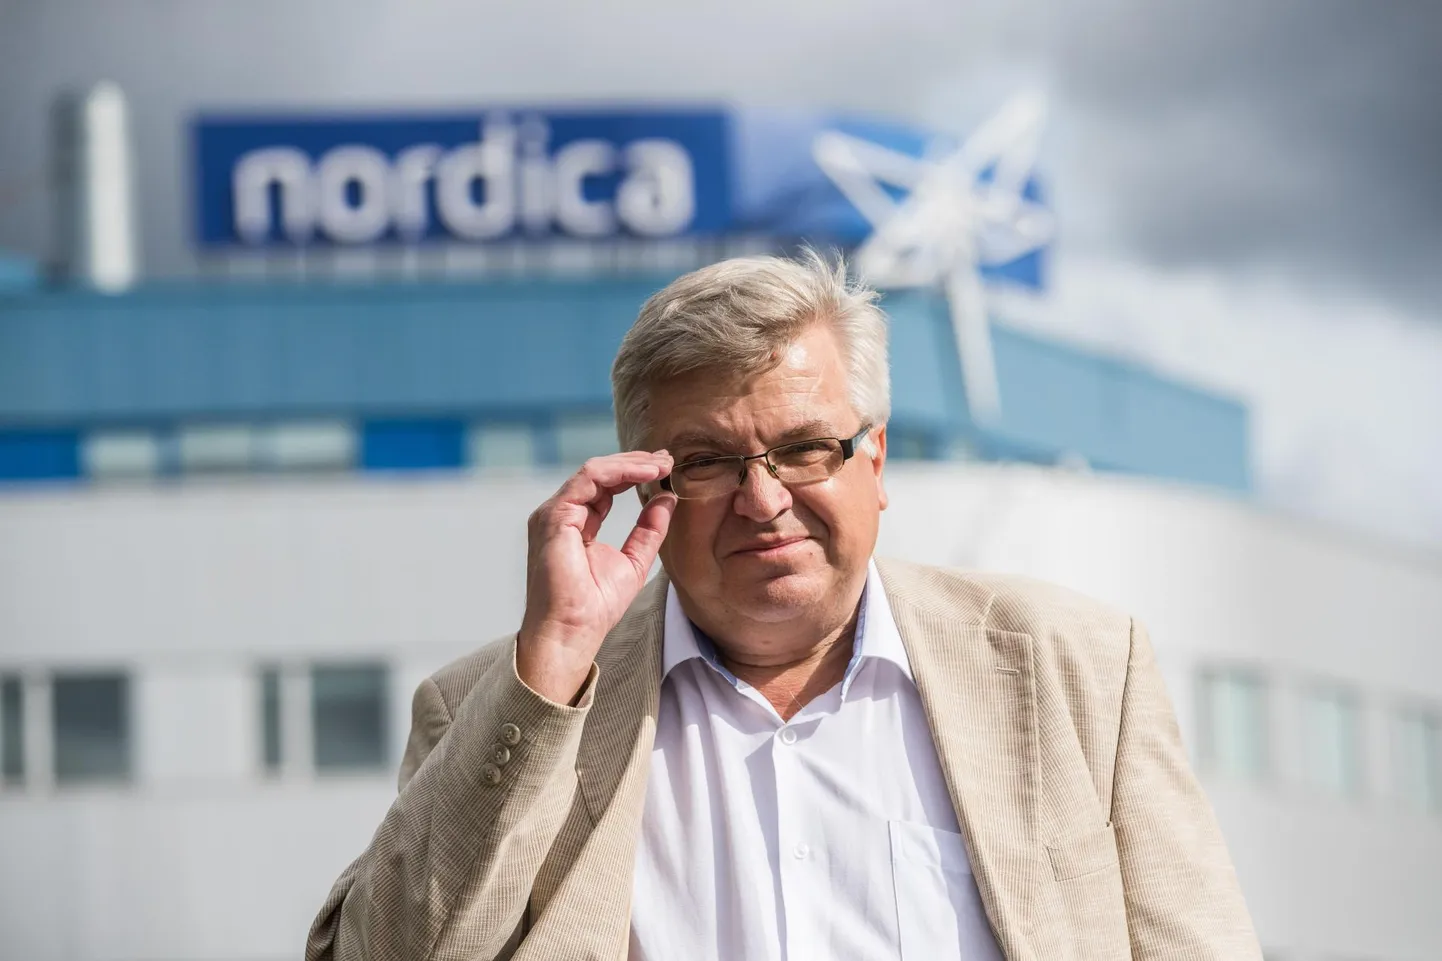 «Me ei taha, et meie konkurendid sellest kuuleks,» jätab Nordica juht Erki Urva uued liini­lennusihtkohad saladuseks.